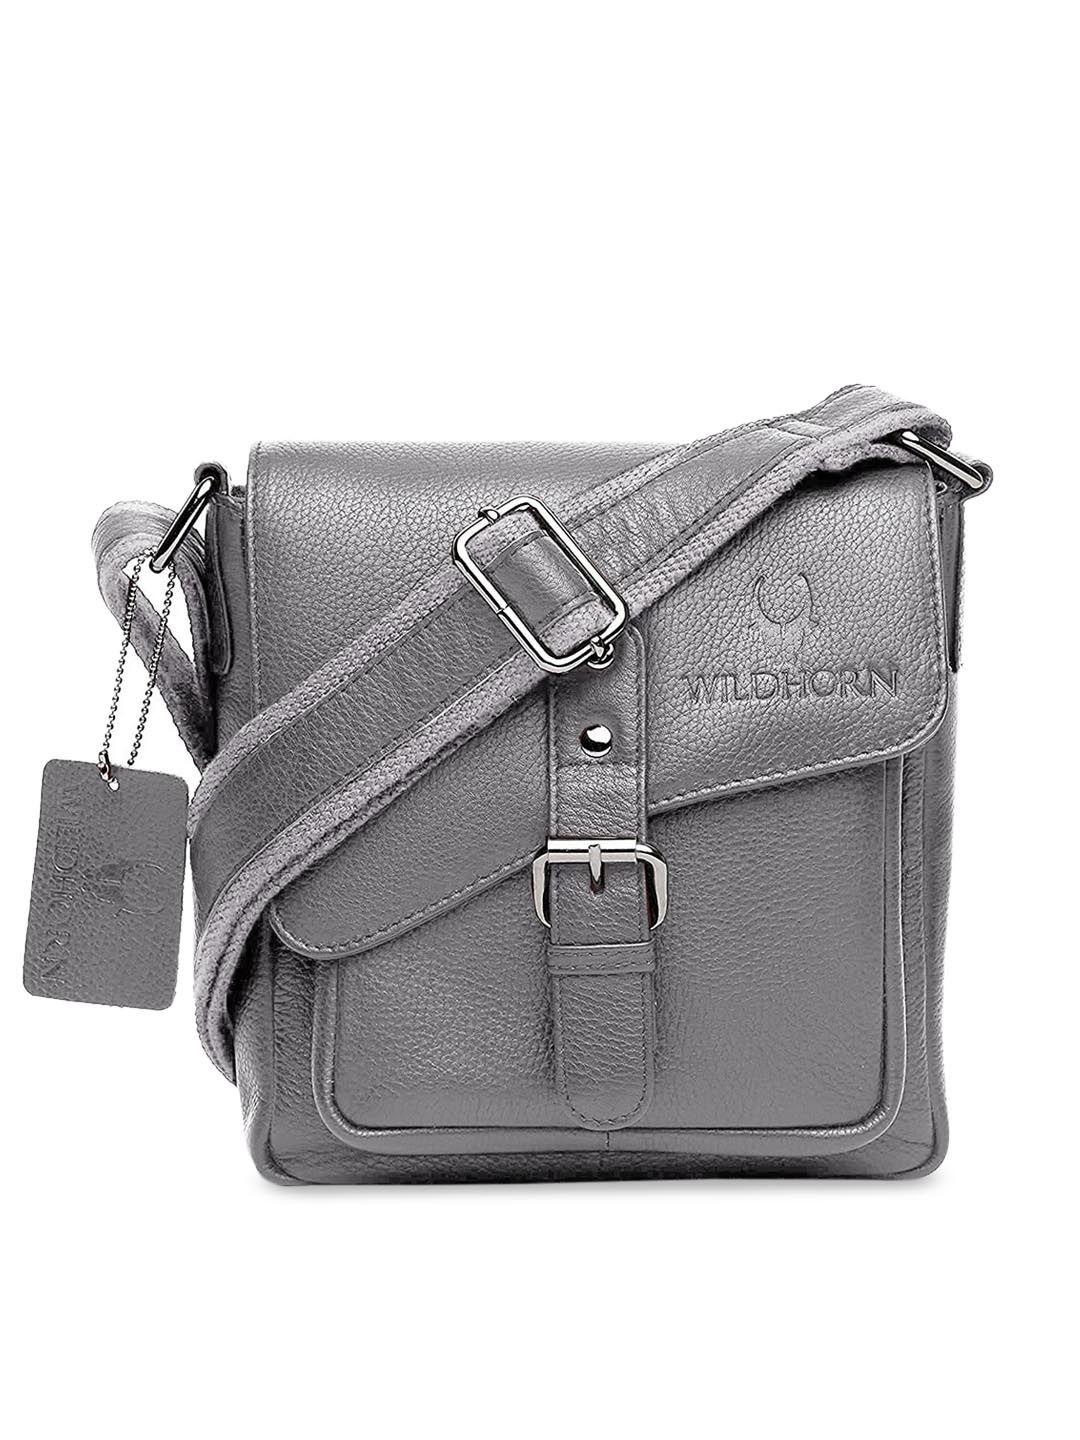 wildhorn grey leather structured sling bag